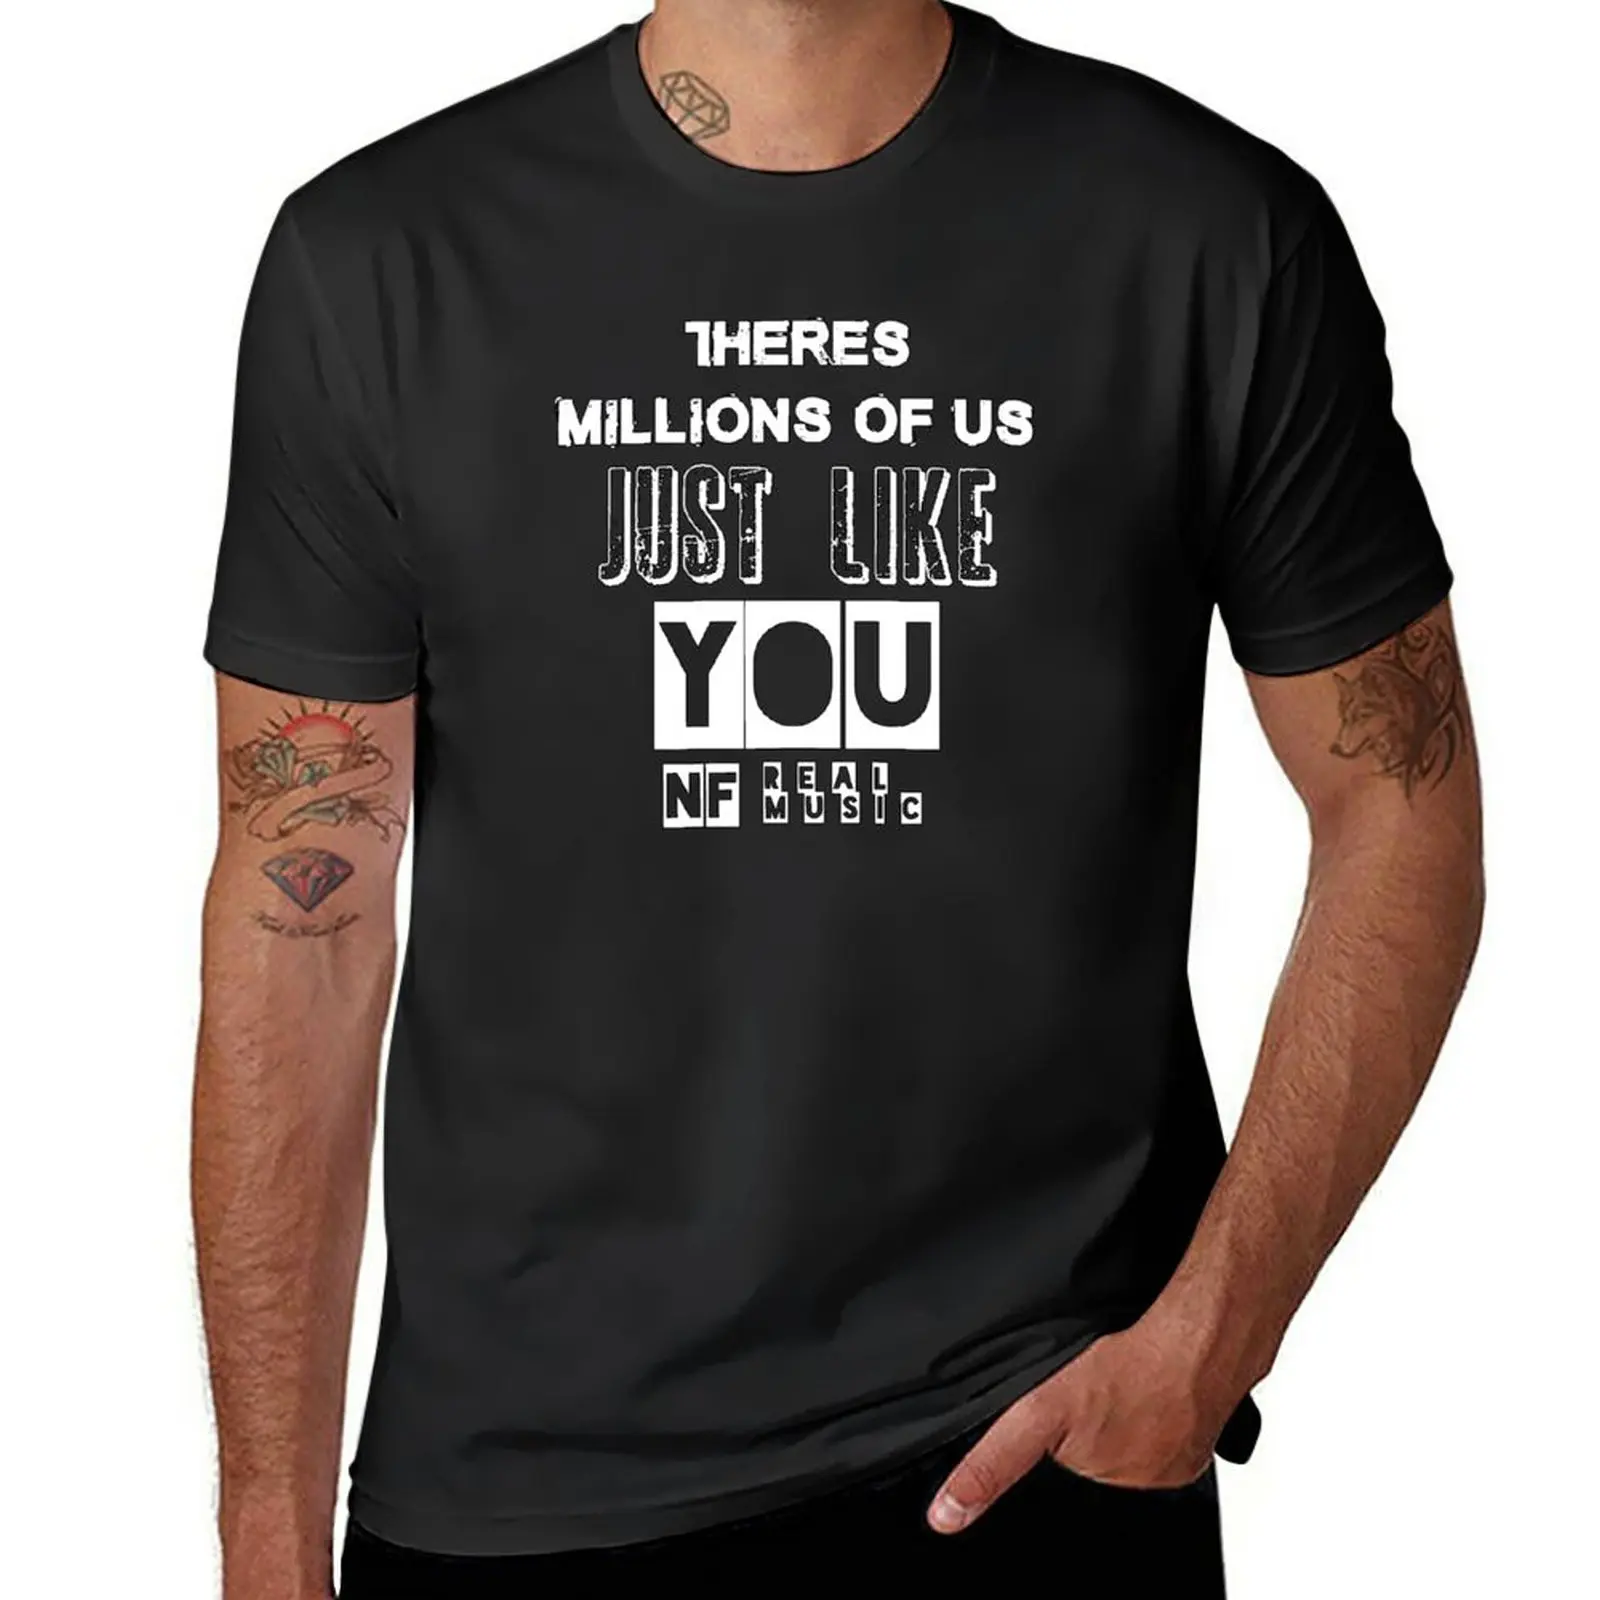 

Новая футболка NF с надписью «Just like you», быстросохнущая футболка, аниме футболка, Забавные футболки, мужские футболки с графическим рисунком, забавные